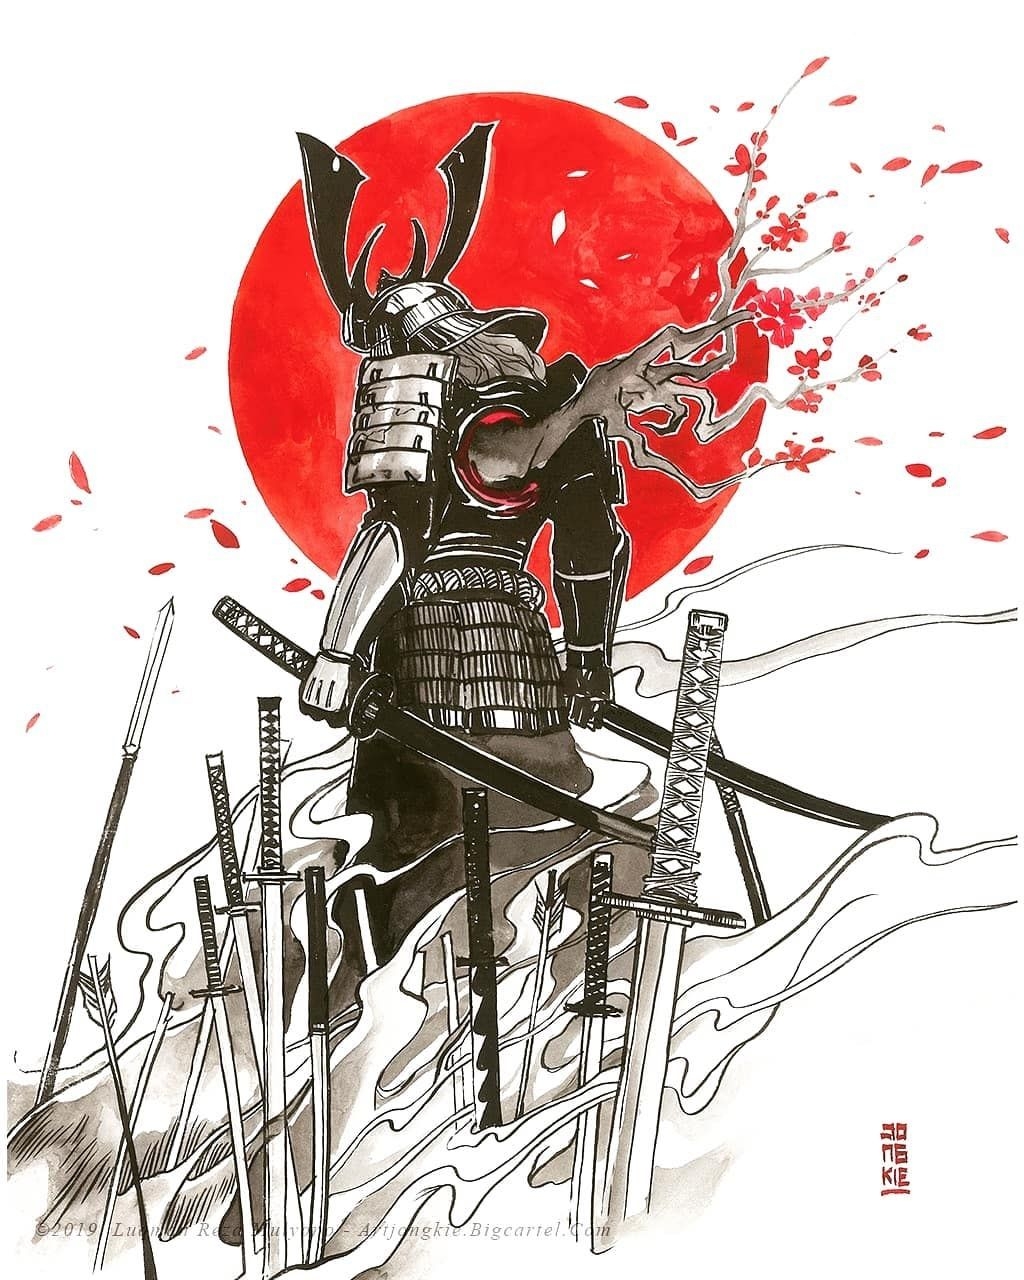 Samurai tattoo: изображения без лицензионных платежей